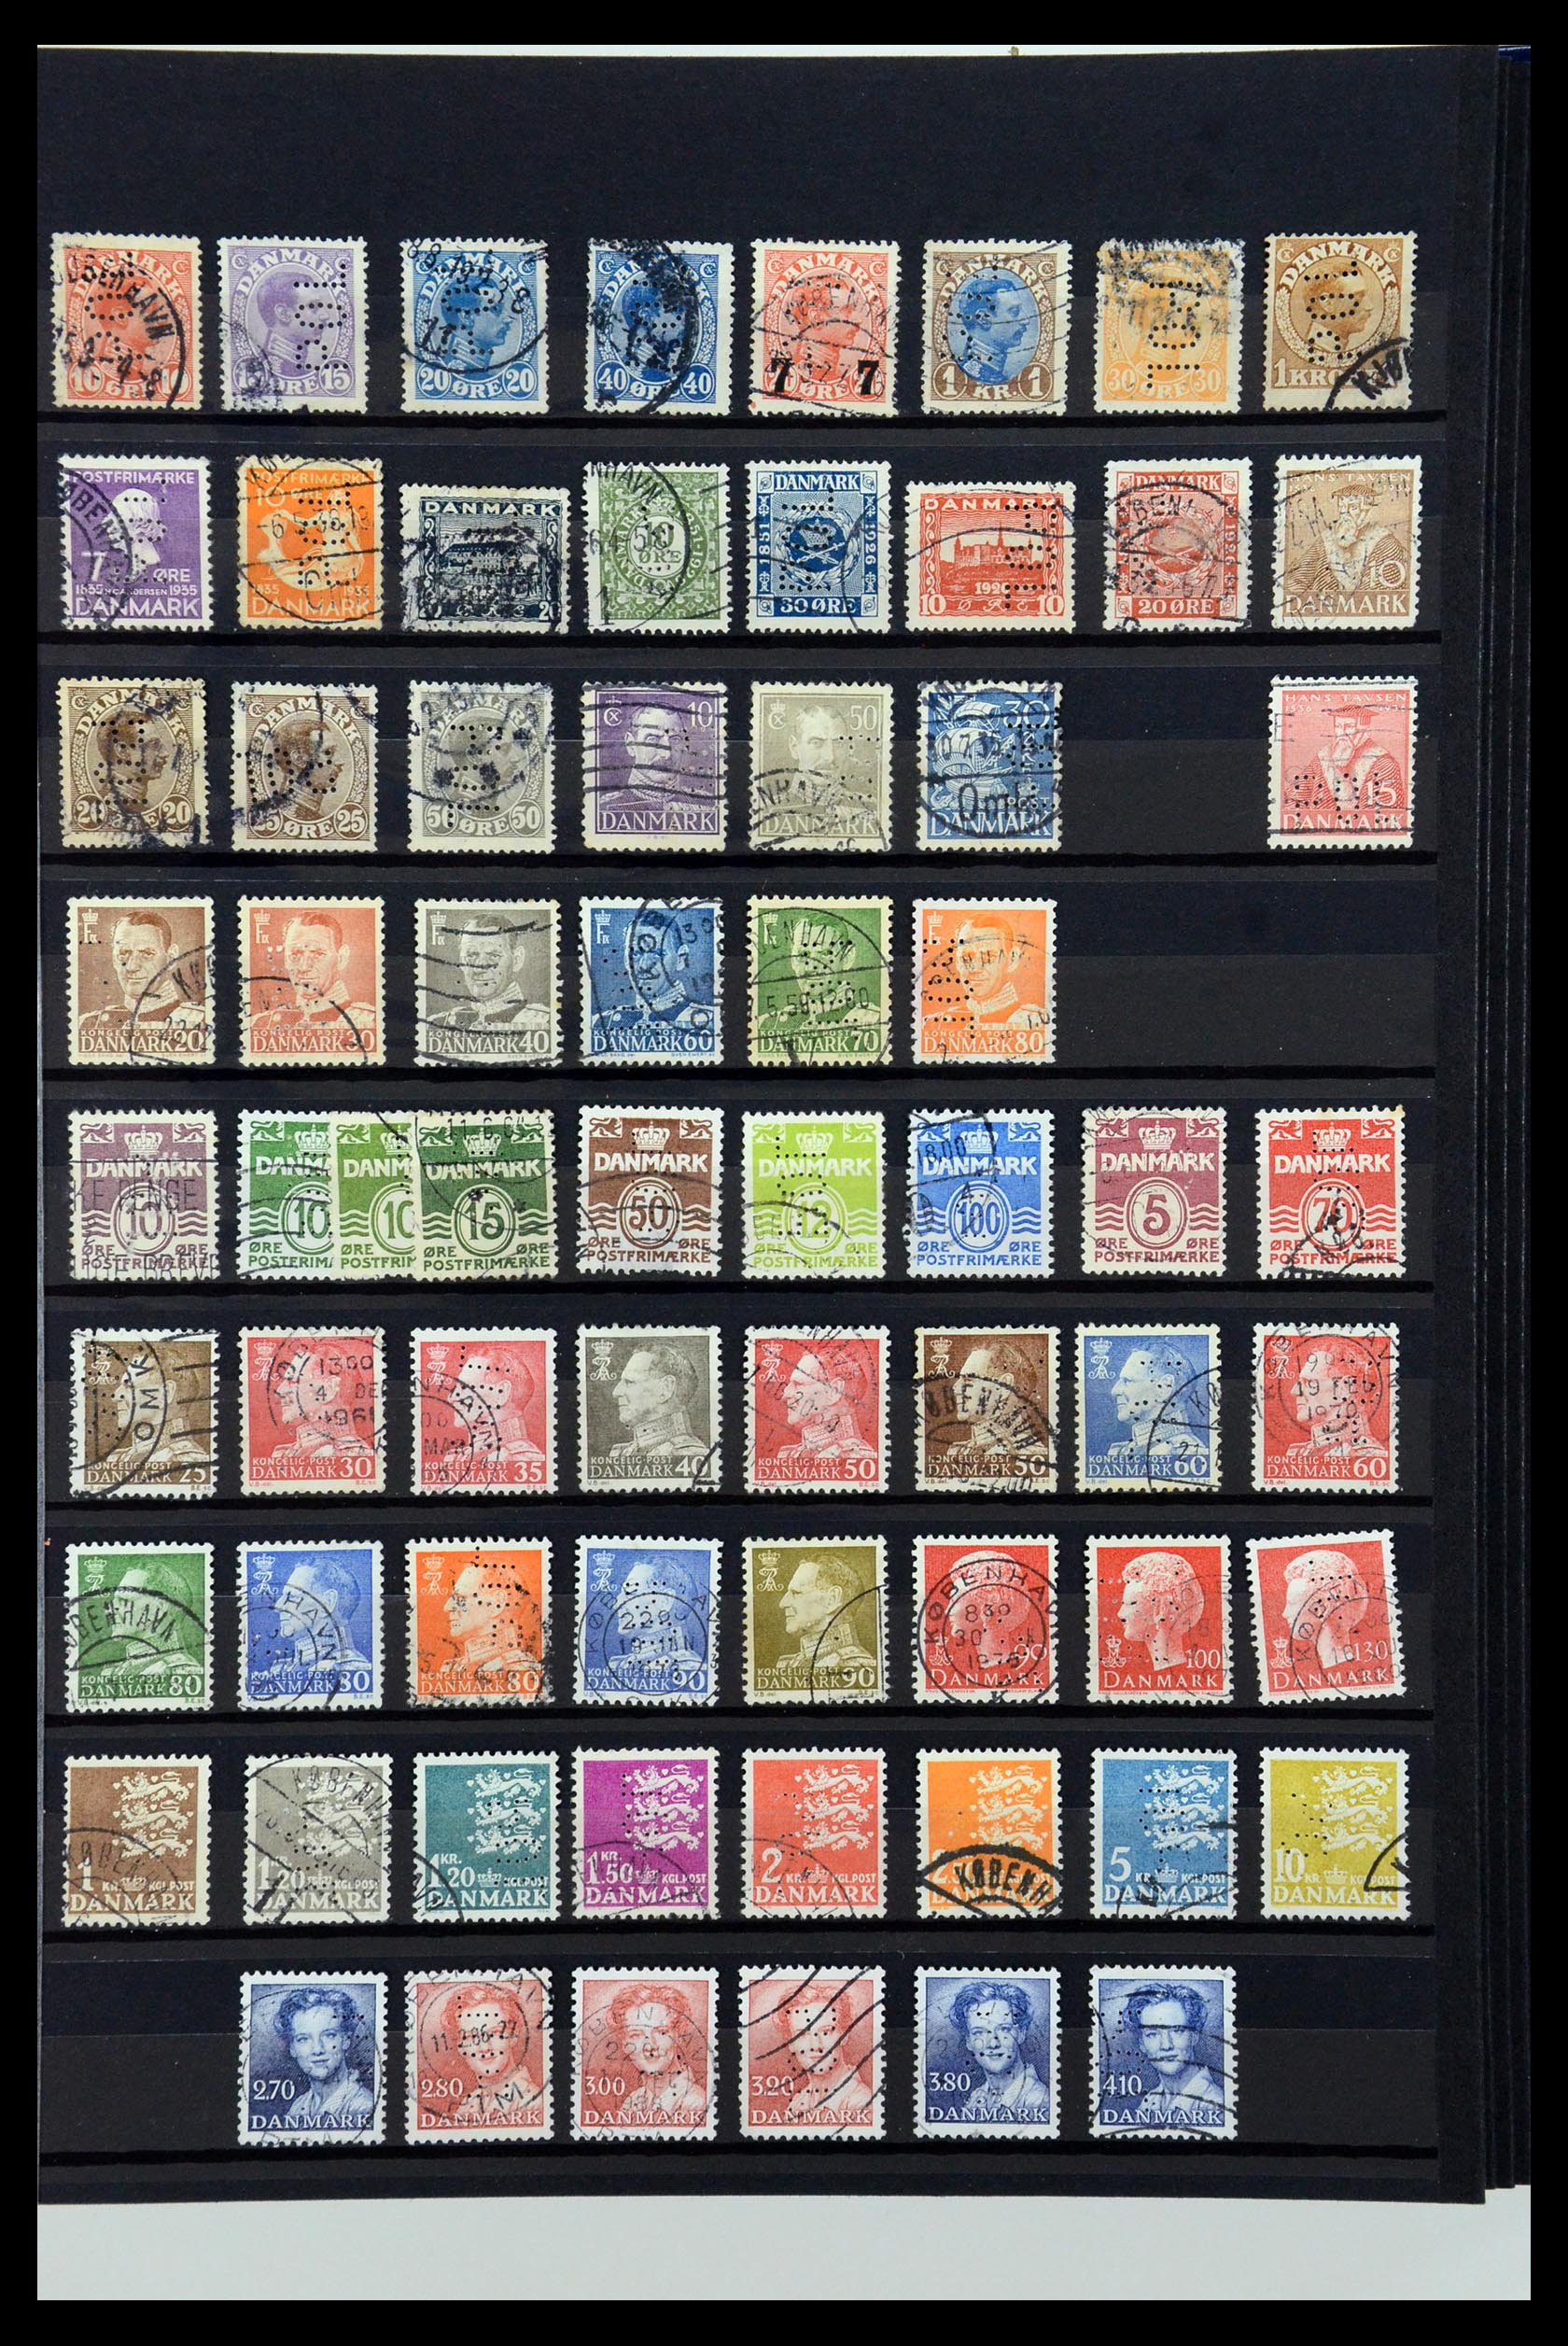 36396 196 - Postzegelverzameling 36396 Denemarken perfins.